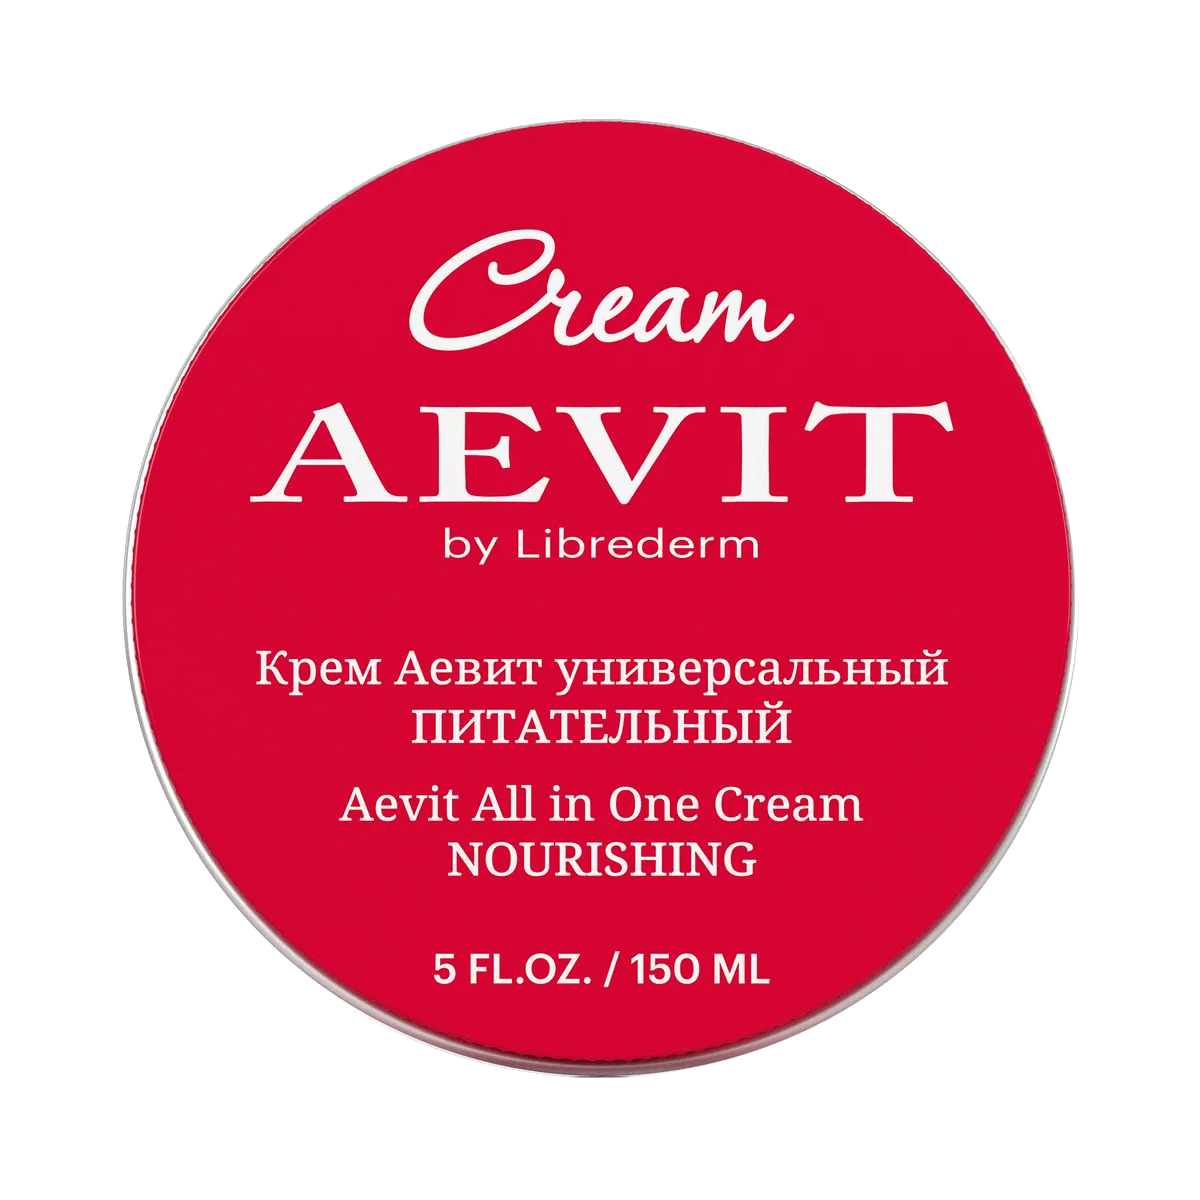 Крем Универсальный питательный, AEVIT, 150 мл, Librederm